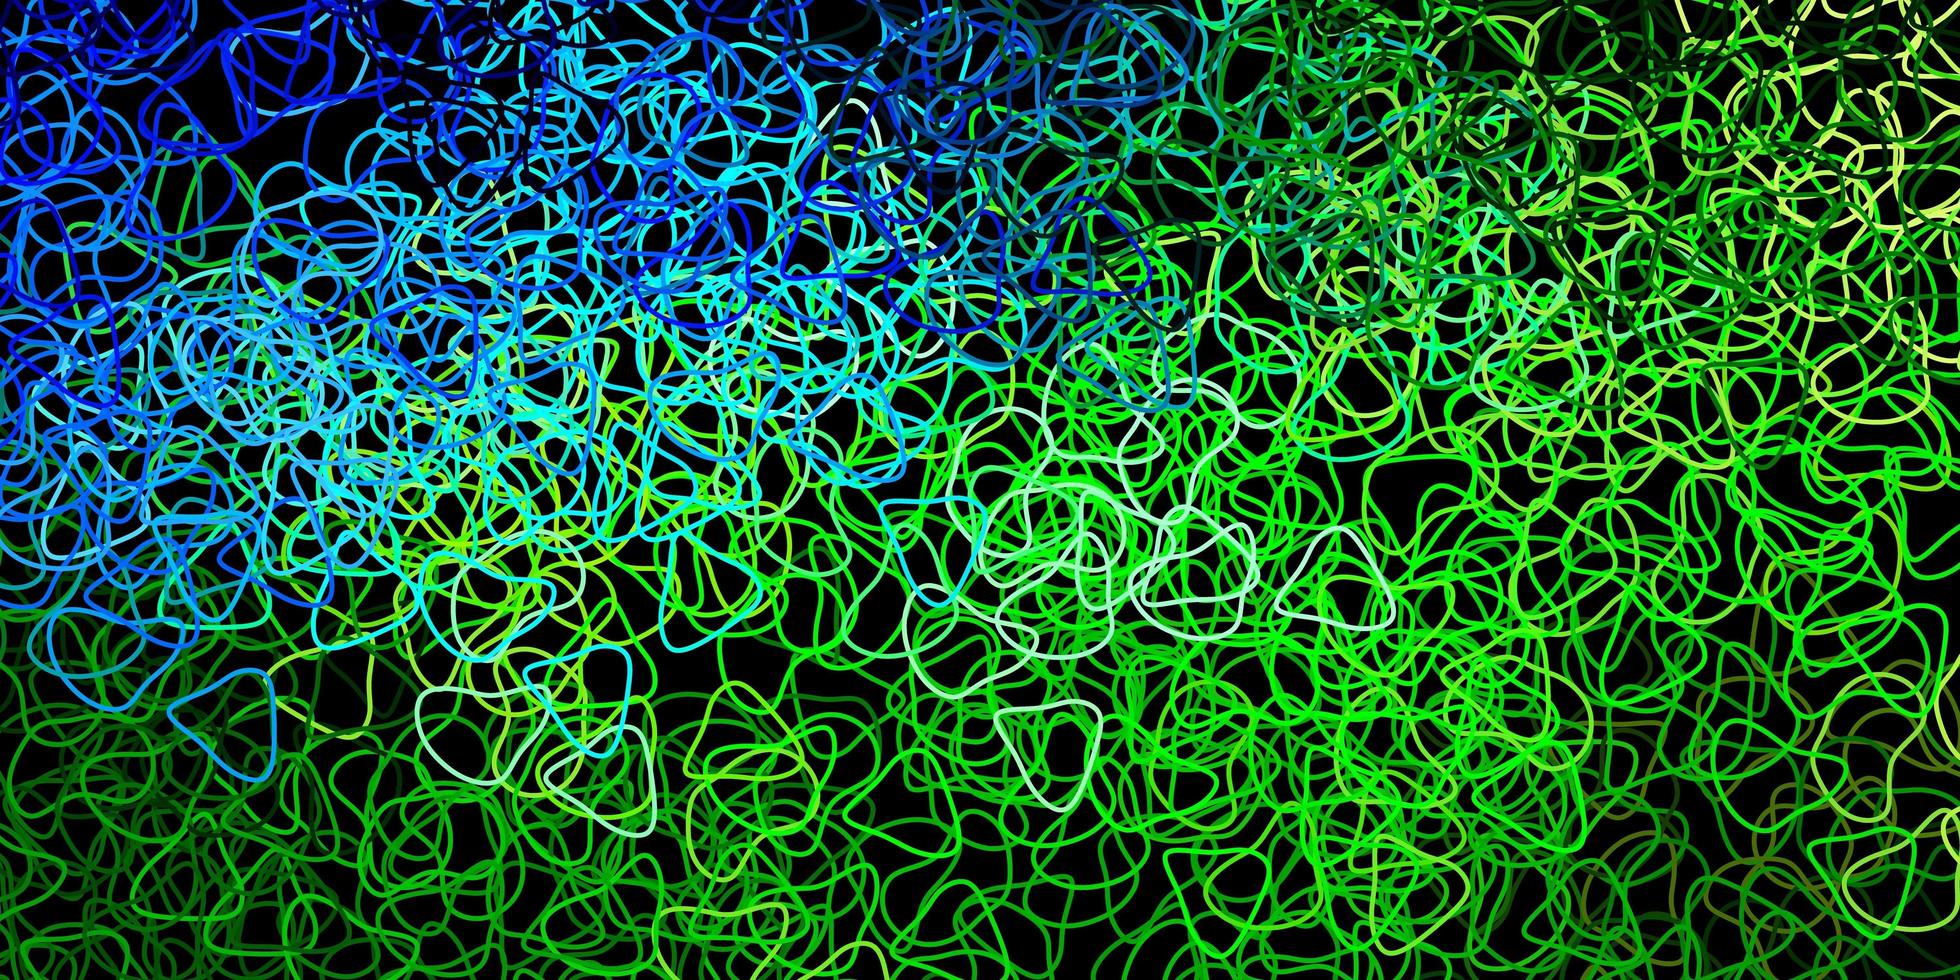 Telón de fondo de vector azul oscuro, verde con formas caóticas.